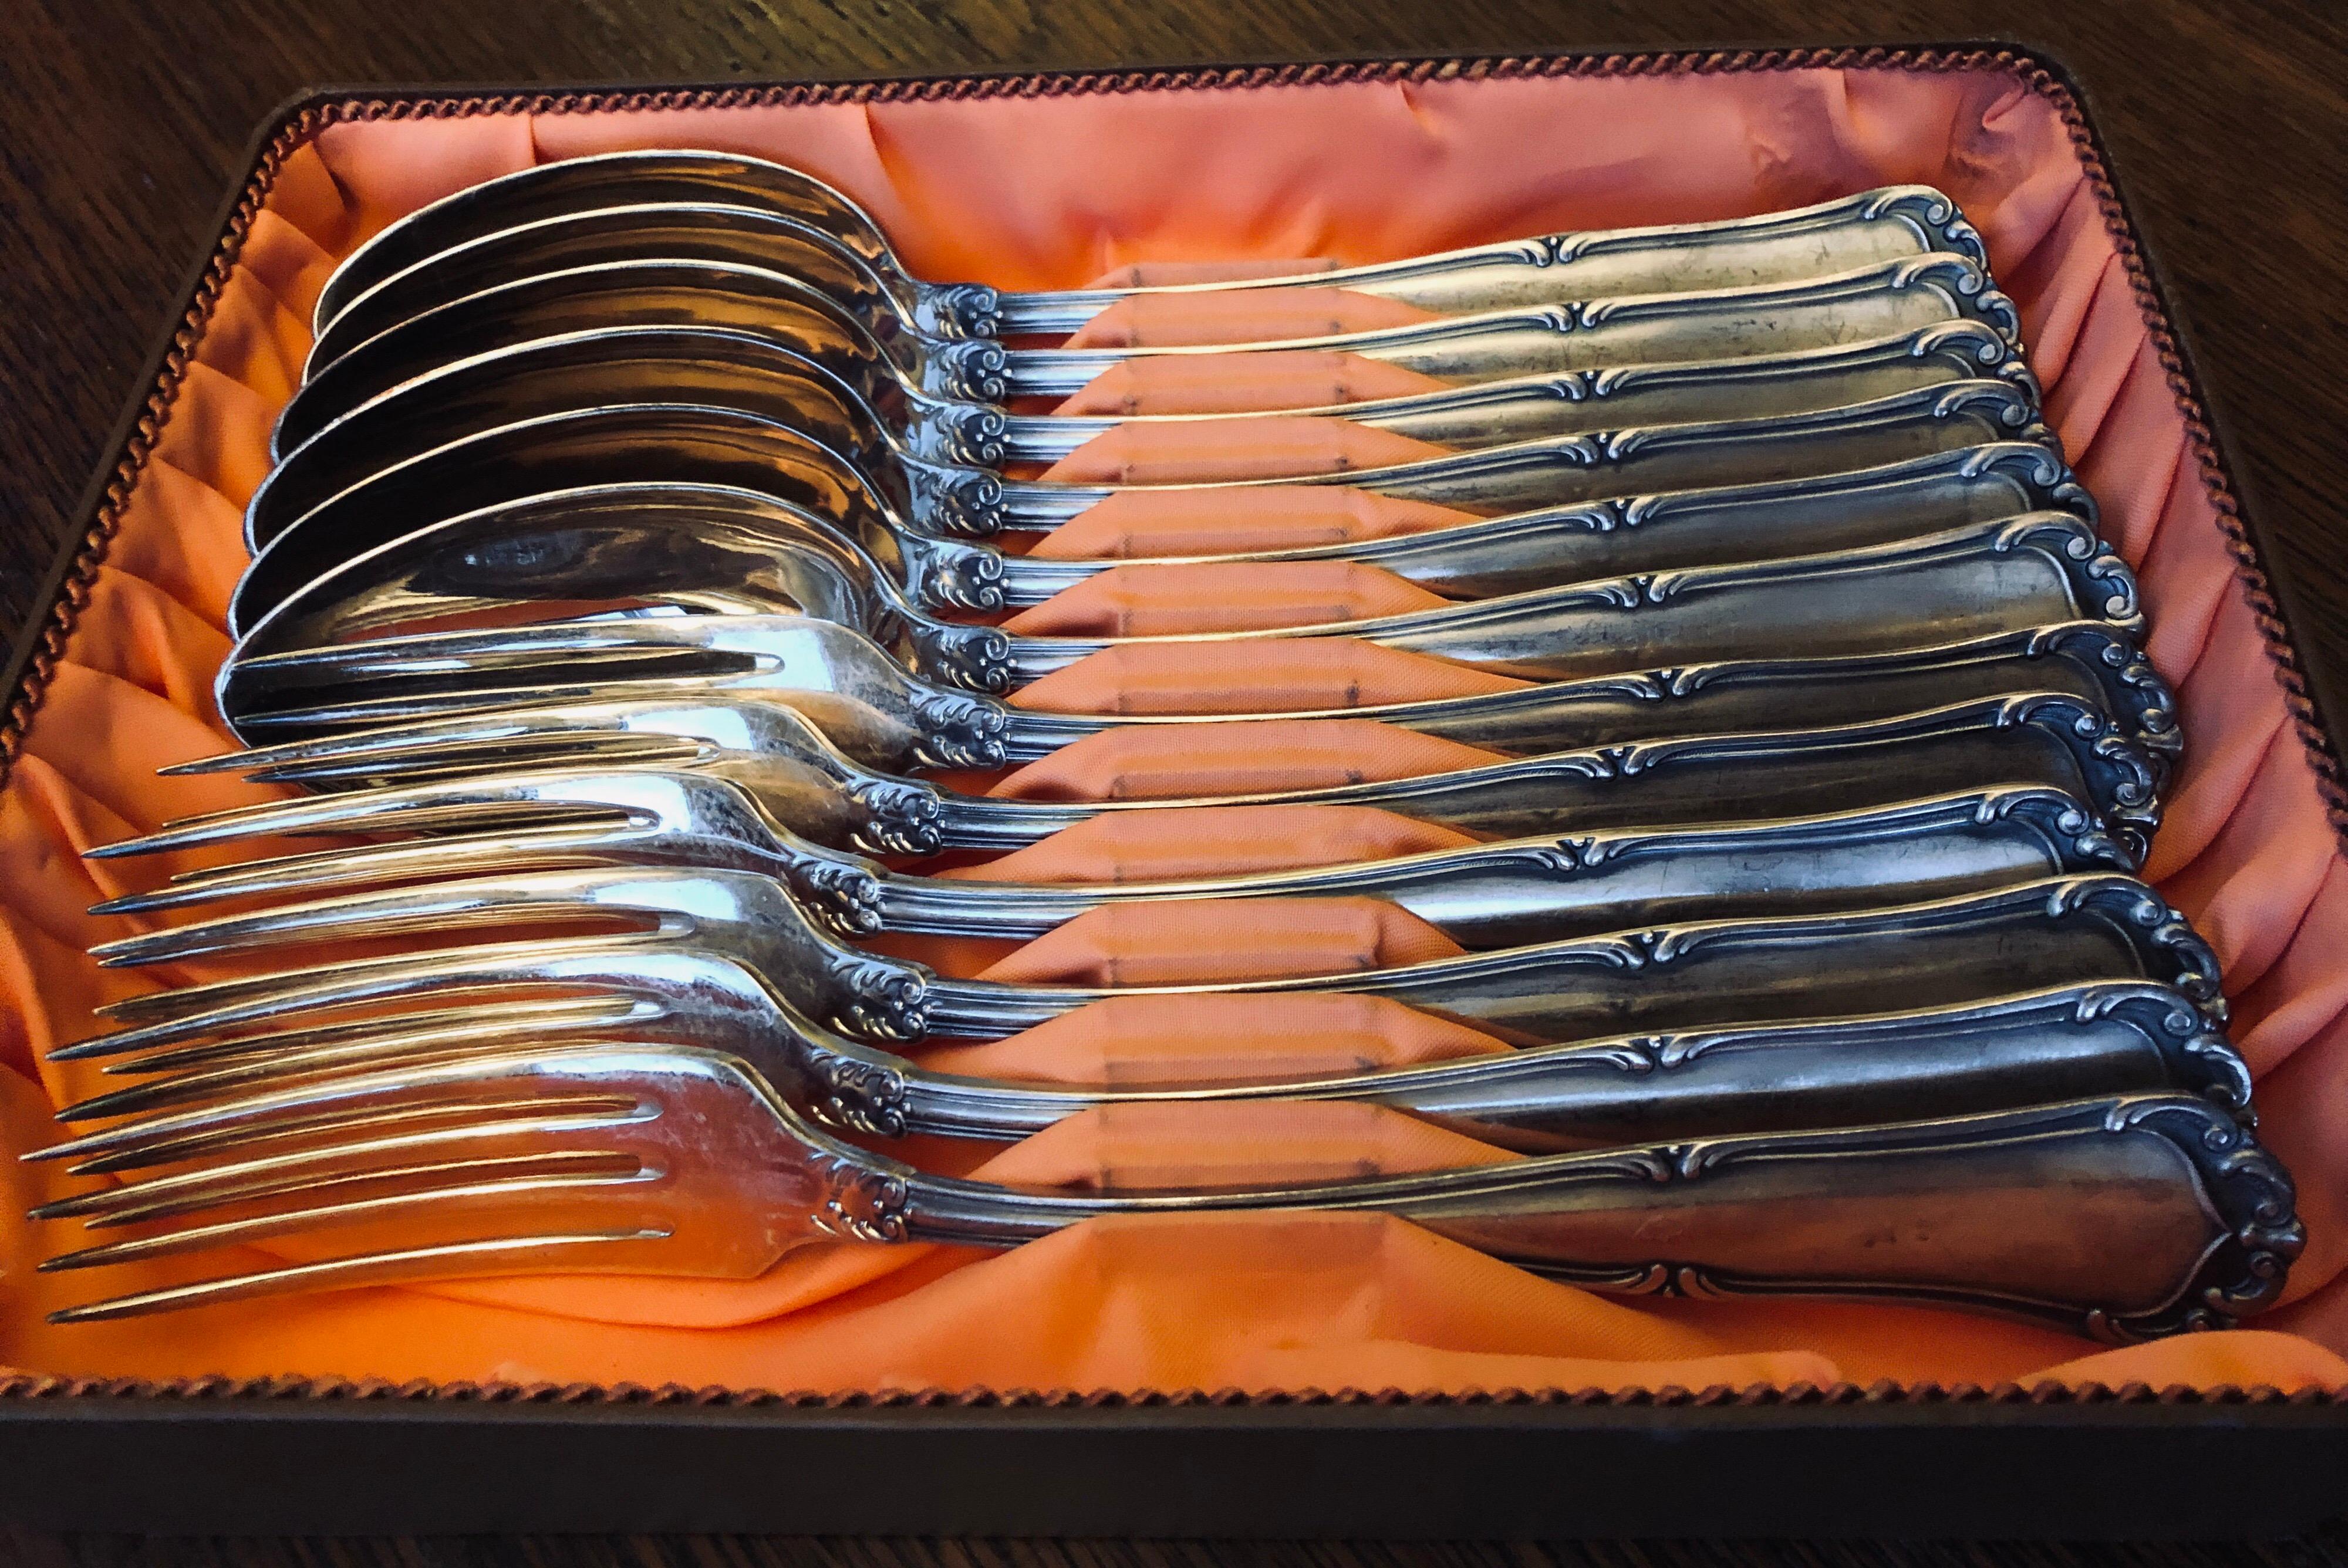 Swiss E.Icherrer Messerschmied Bulach Flatware Silver Set of 12 Spoons Forks in a Box